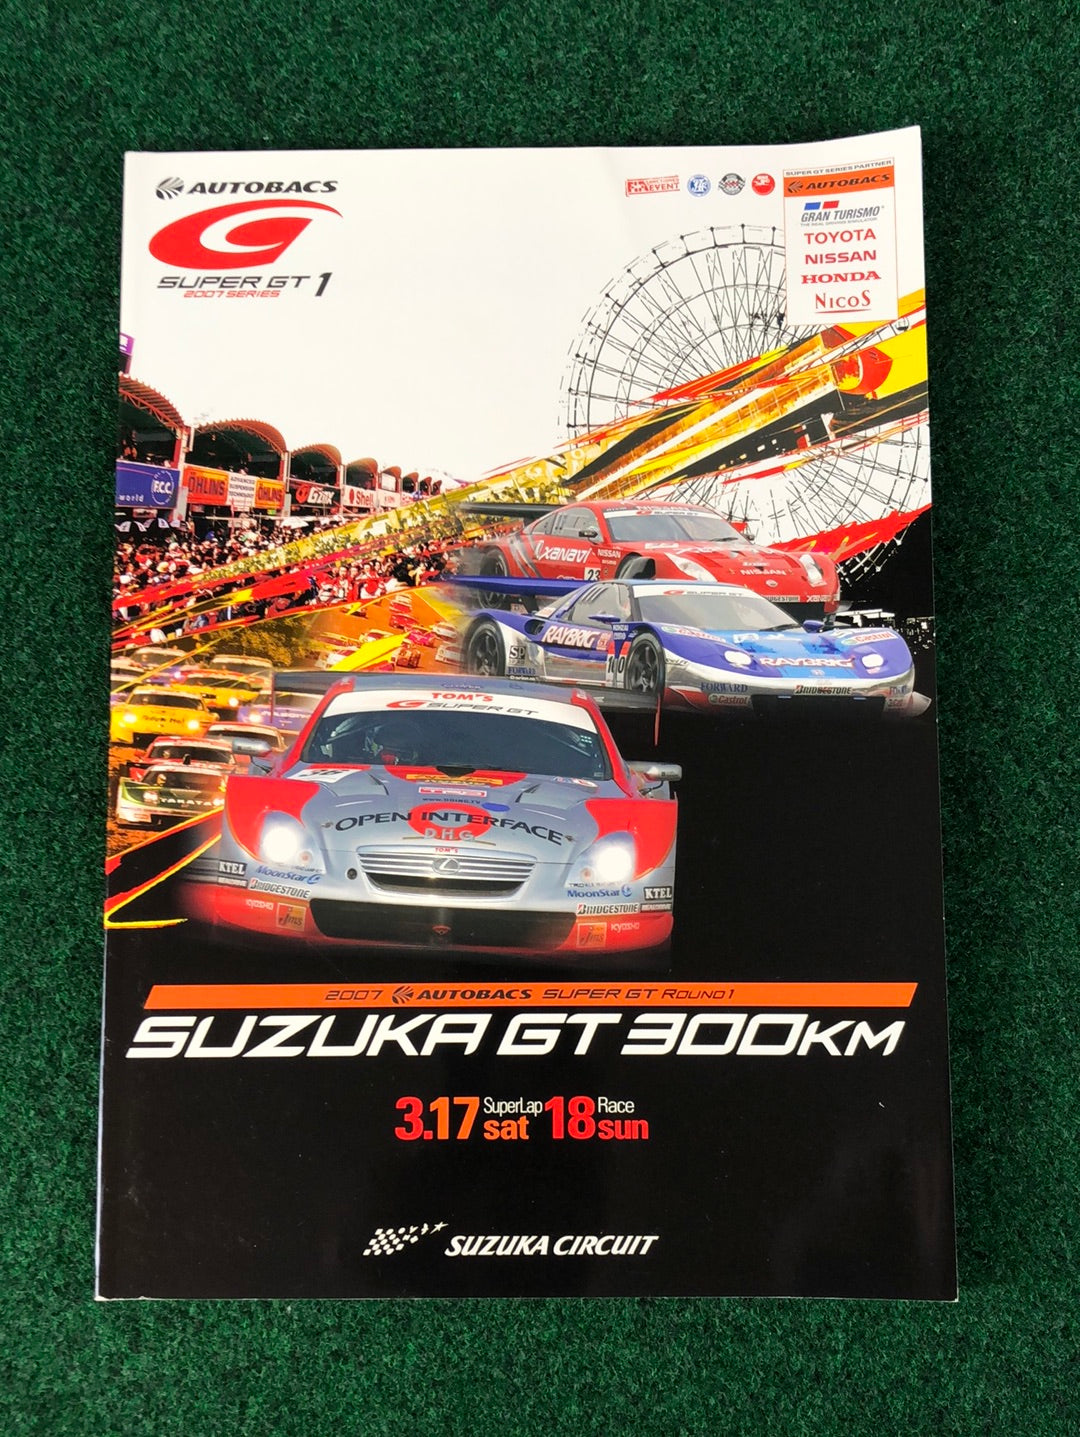 2007 AUTOBACS SuperGT Suzuka GT 300km Round 1 Official Race Program